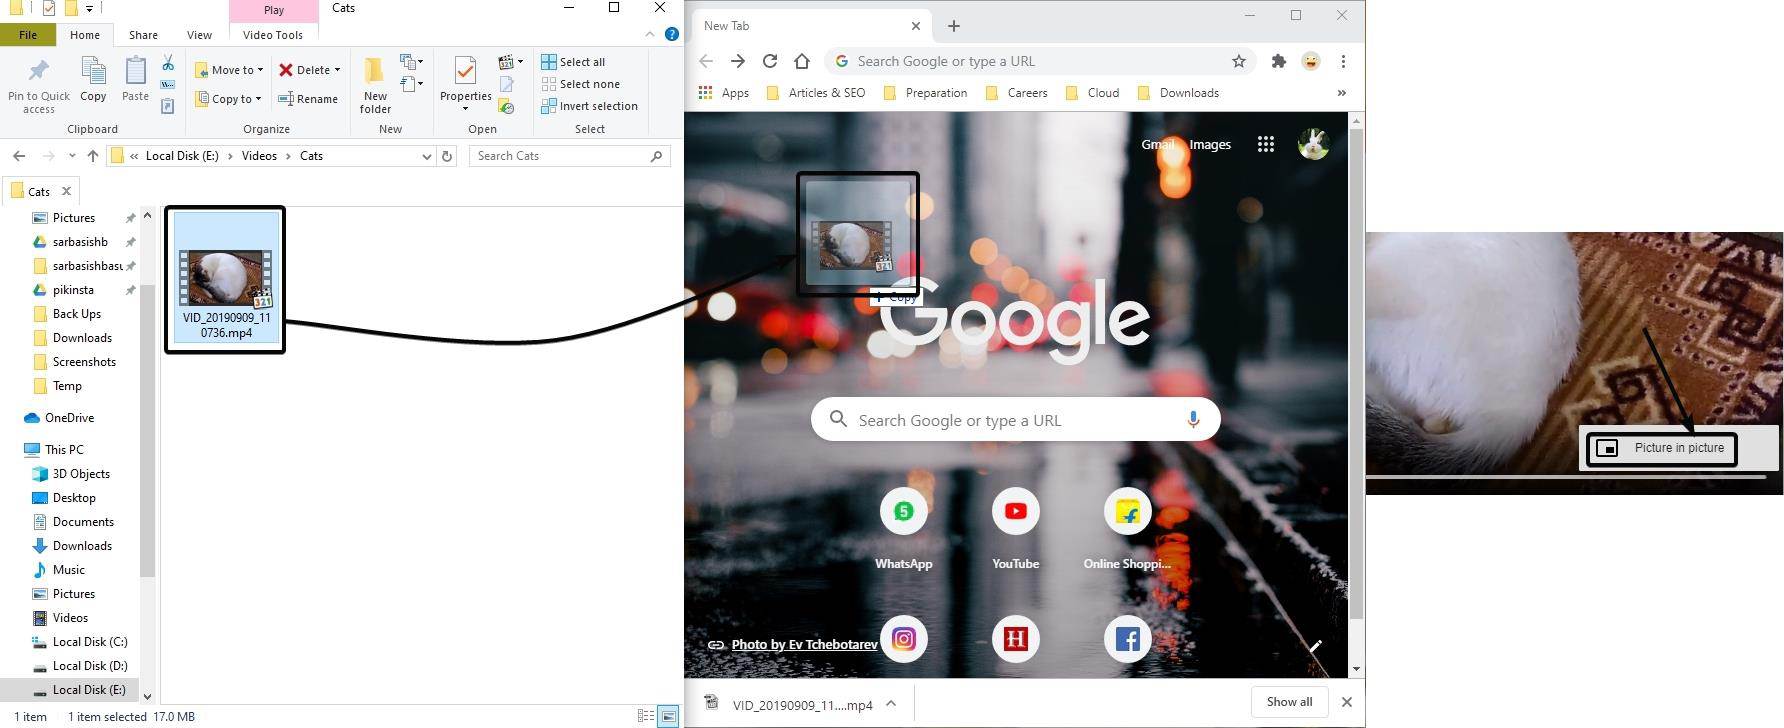 Google Chrome och klicka på 'Bild i bild' från menyn med tre punkter